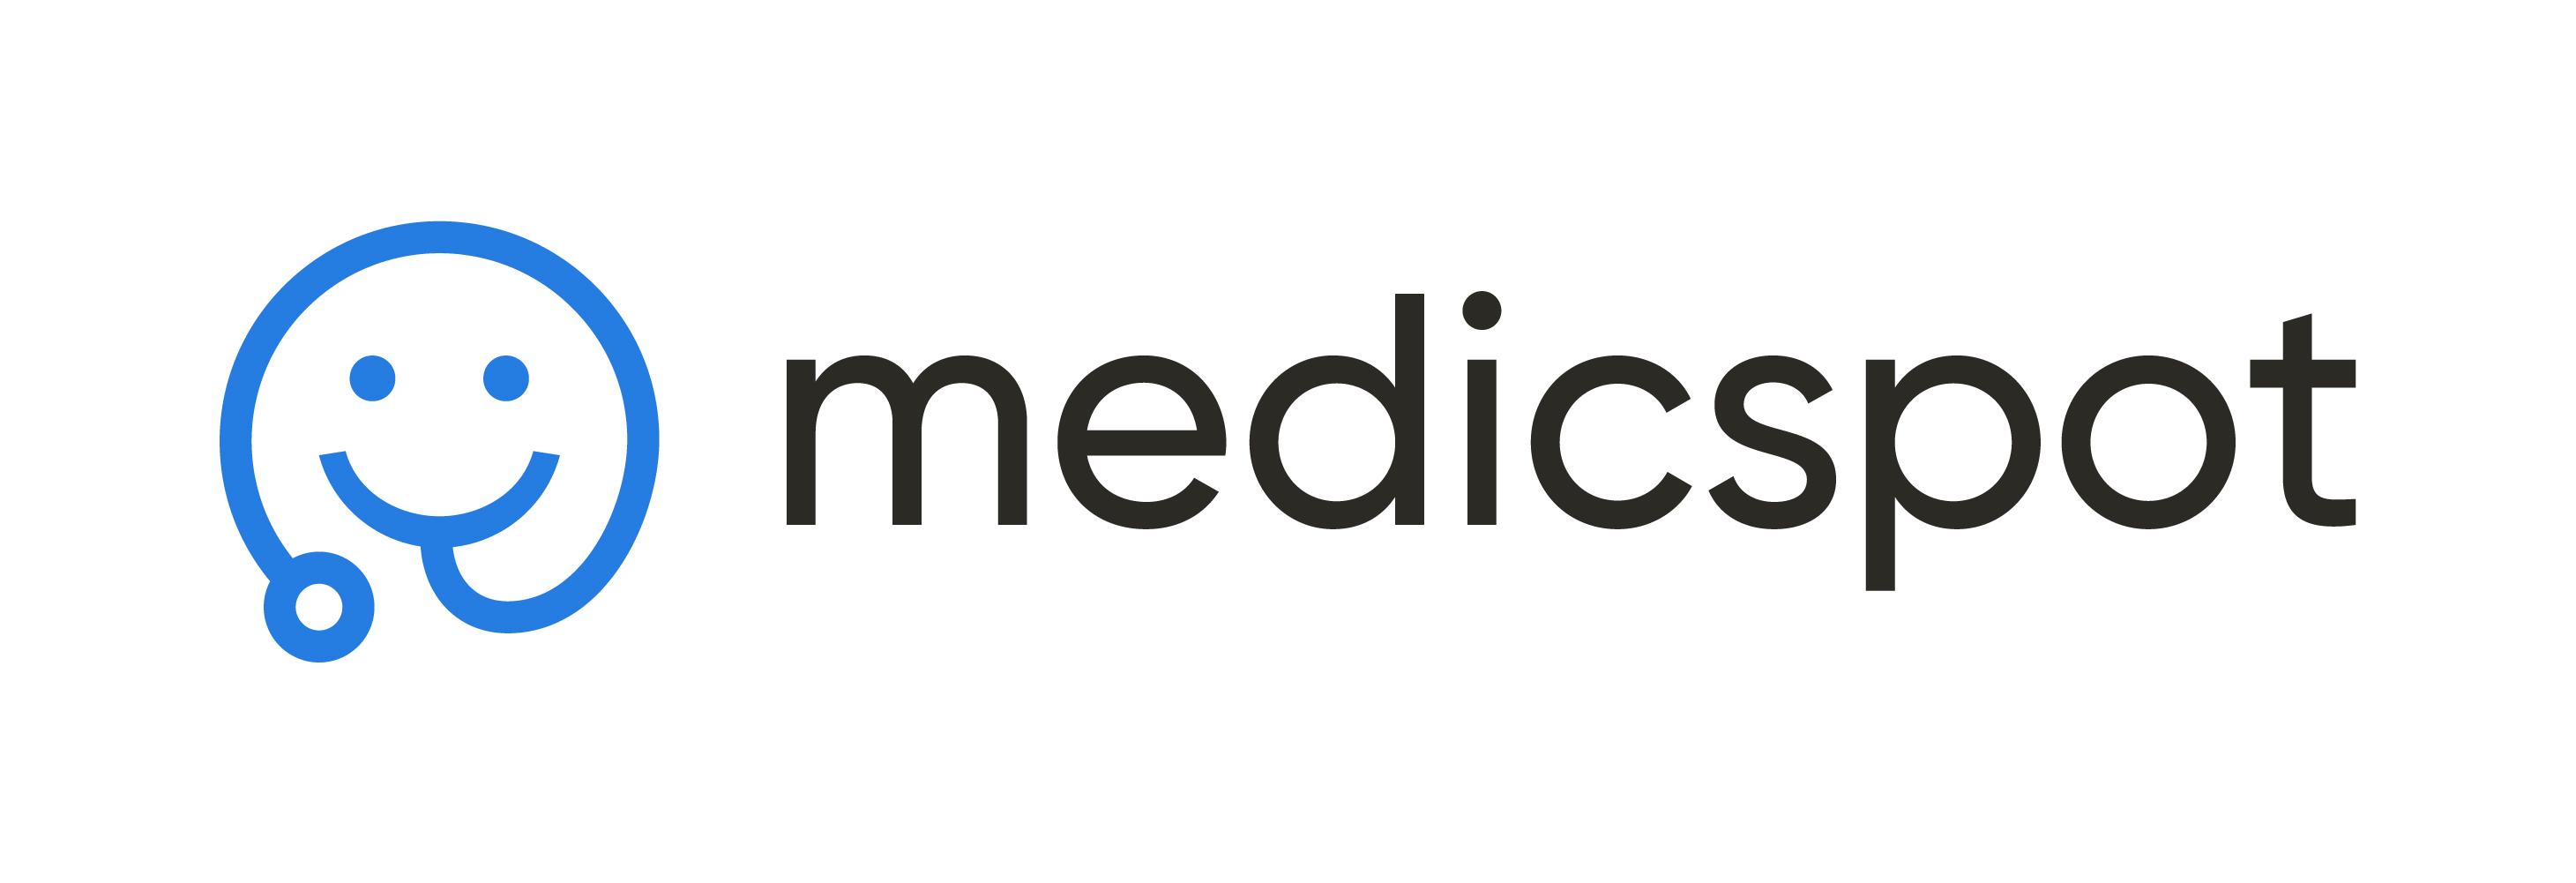 Medicspot